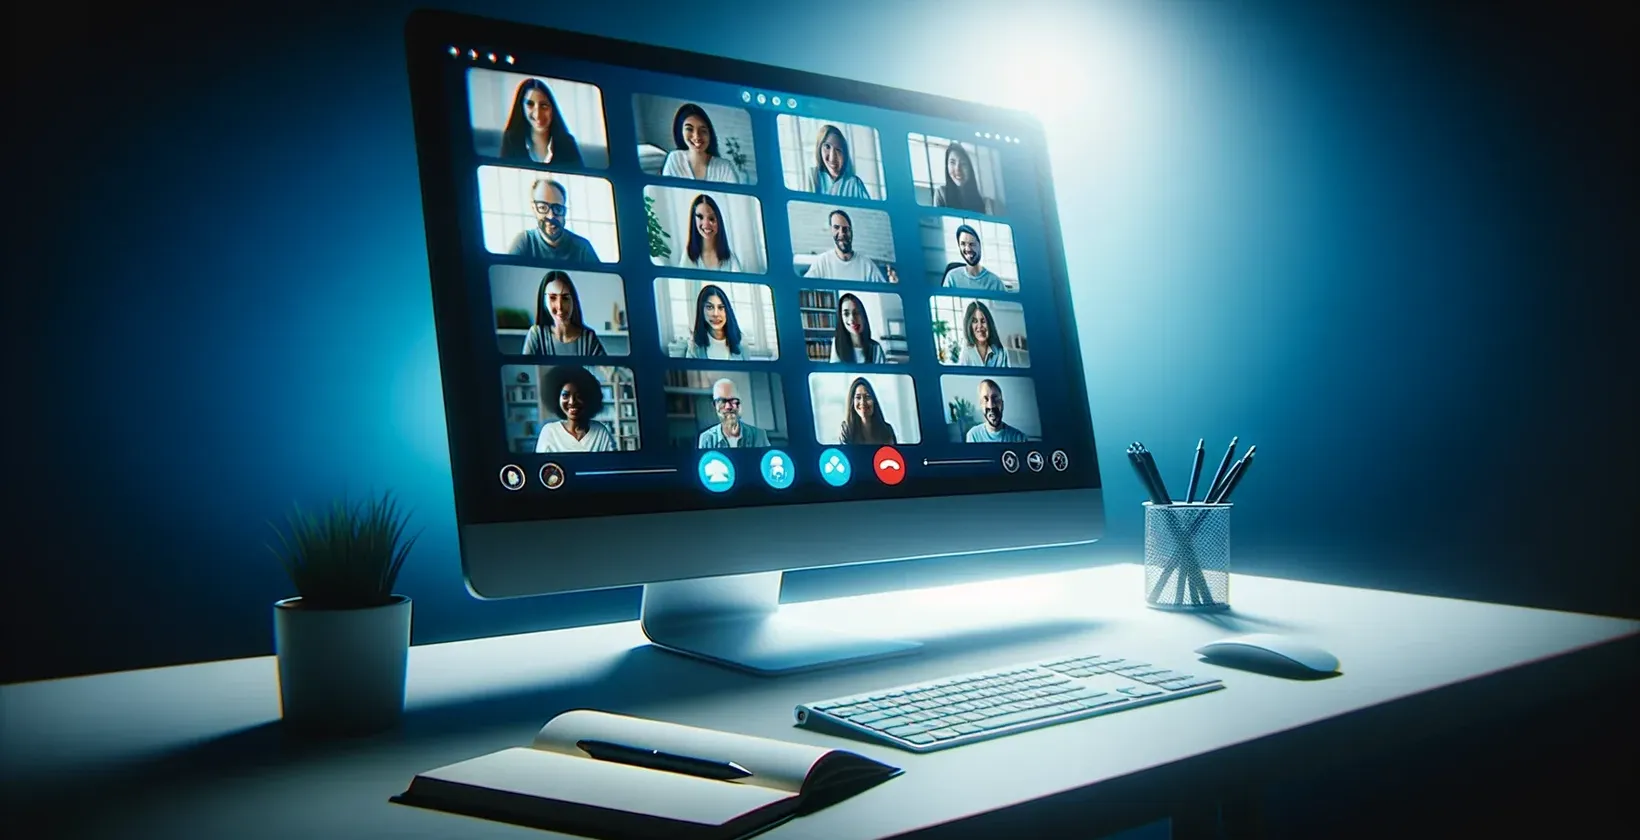 Slika računalniškega zaslona, ki prikazuje sejo GoToMeeting, z vidno skupino ljudi in prepisom v živo.